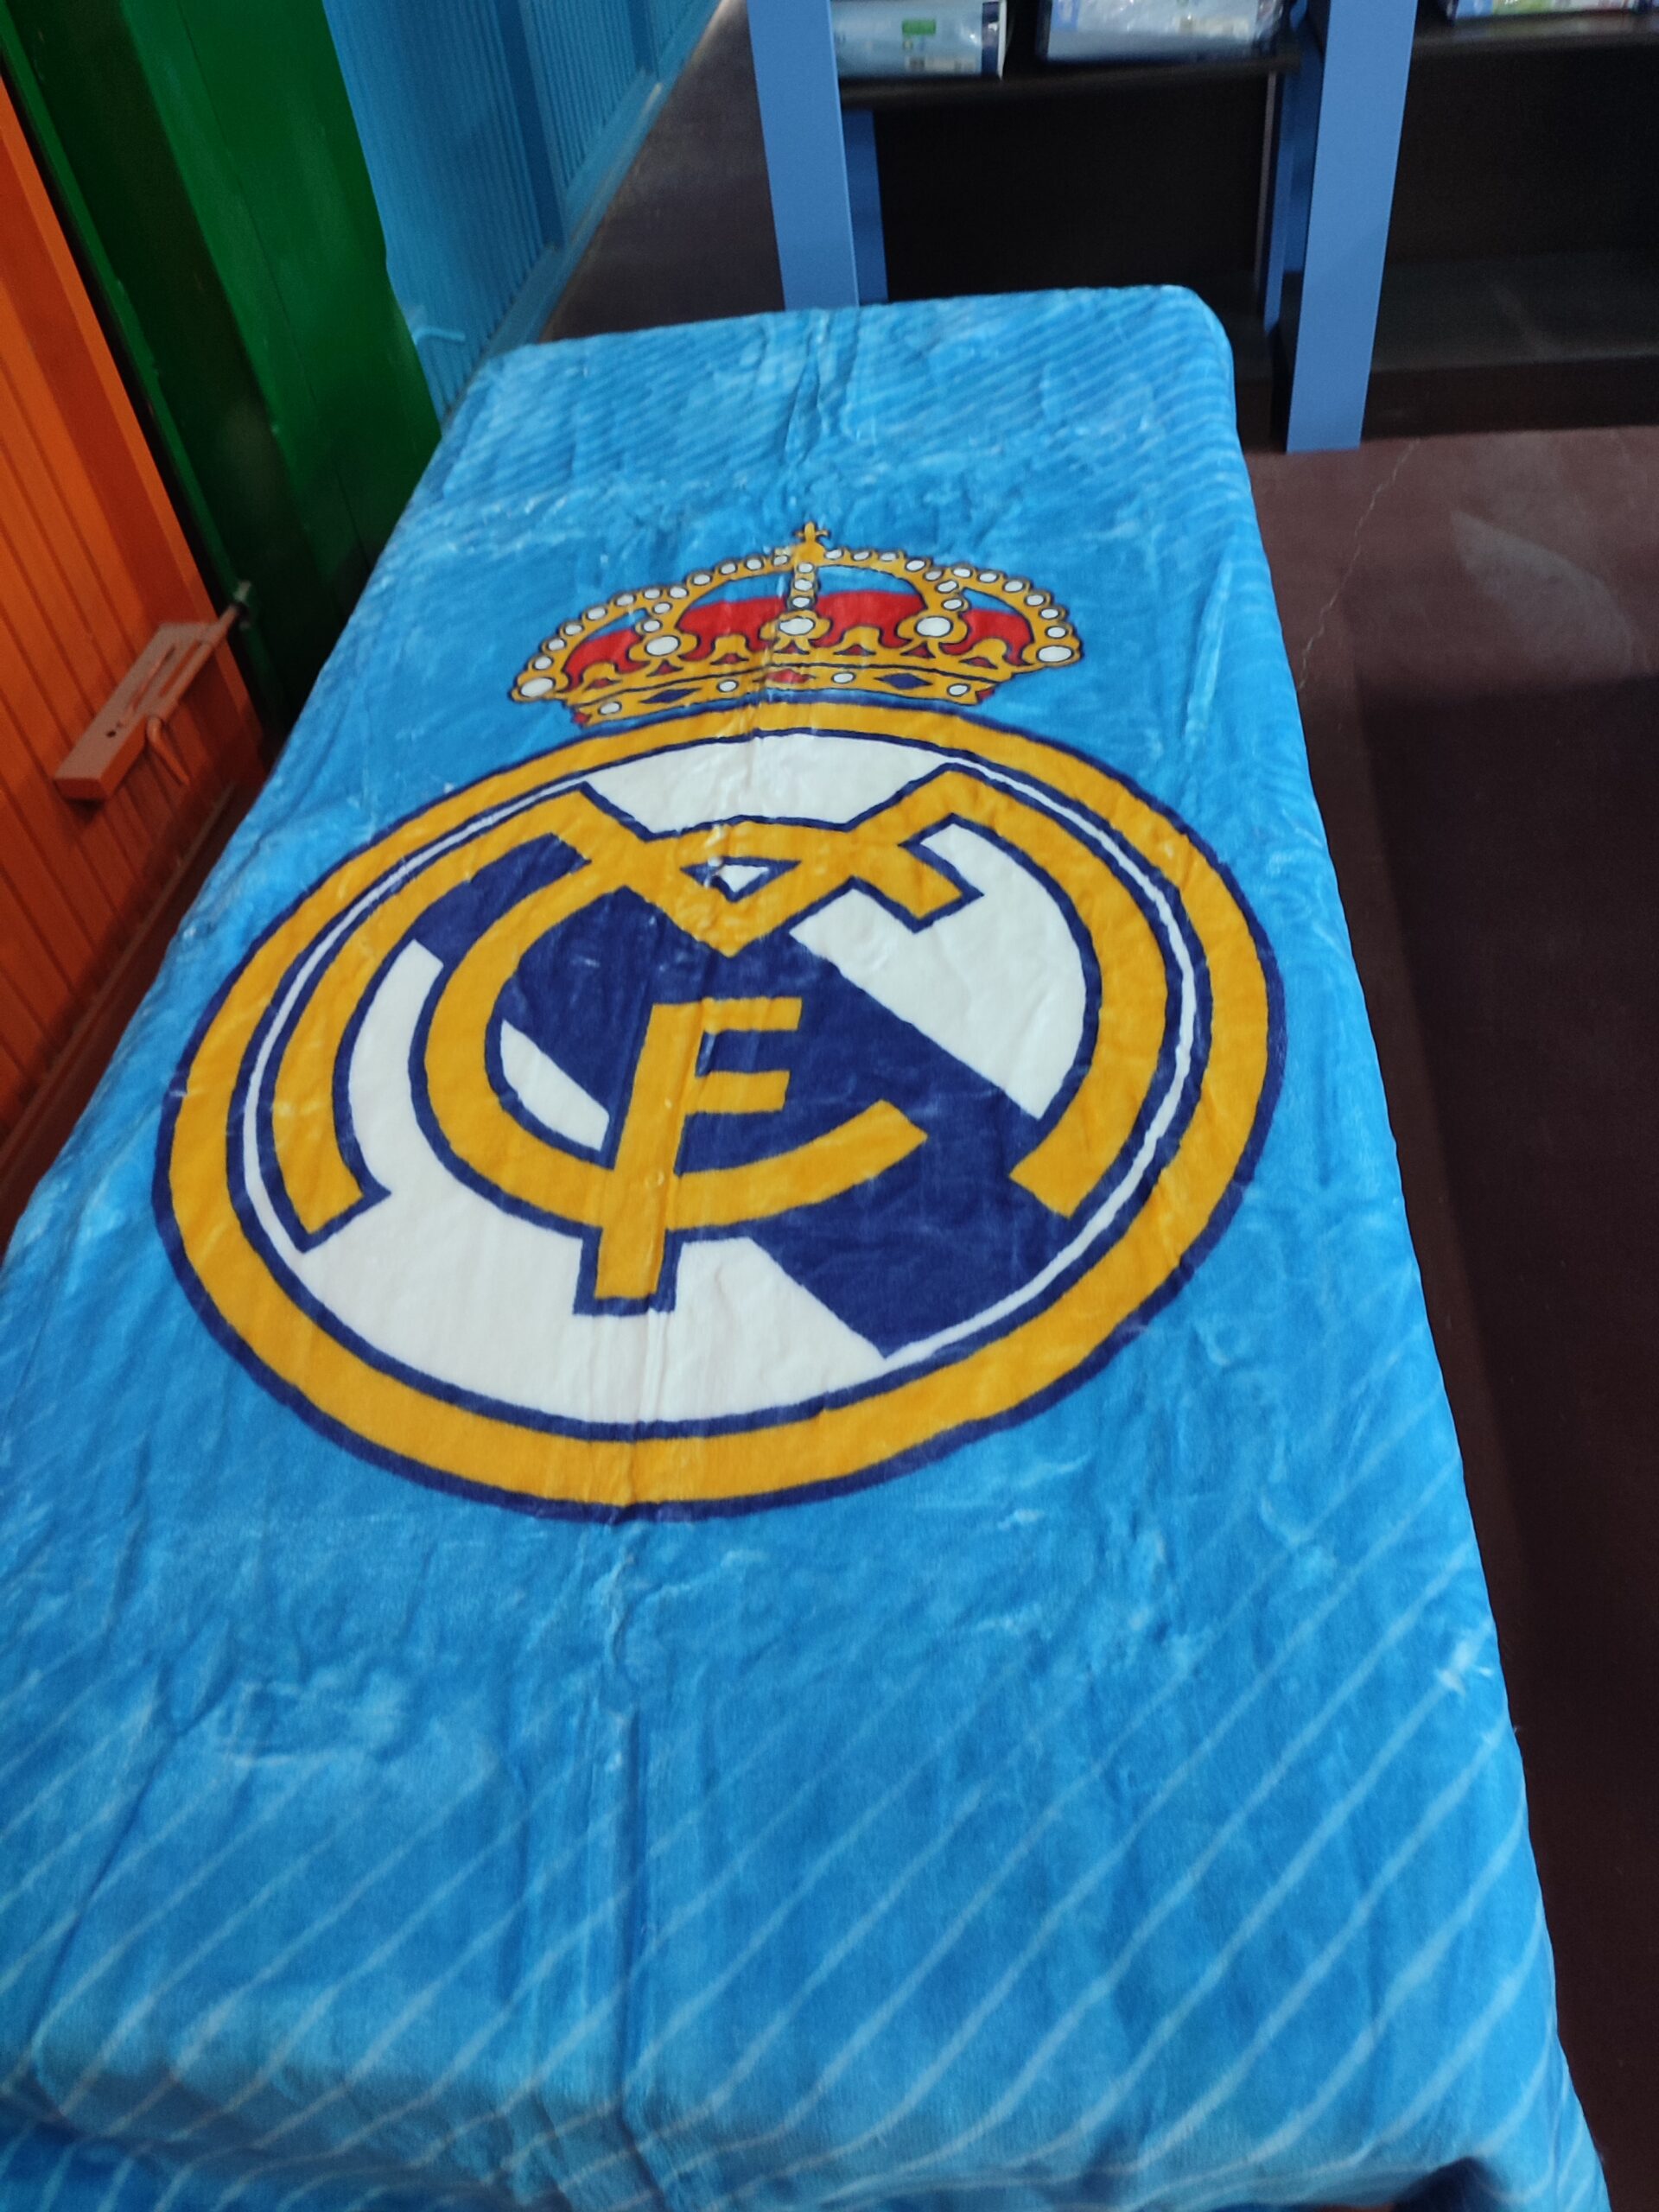 Real Madrid Manta de lana - Real Madrid CF